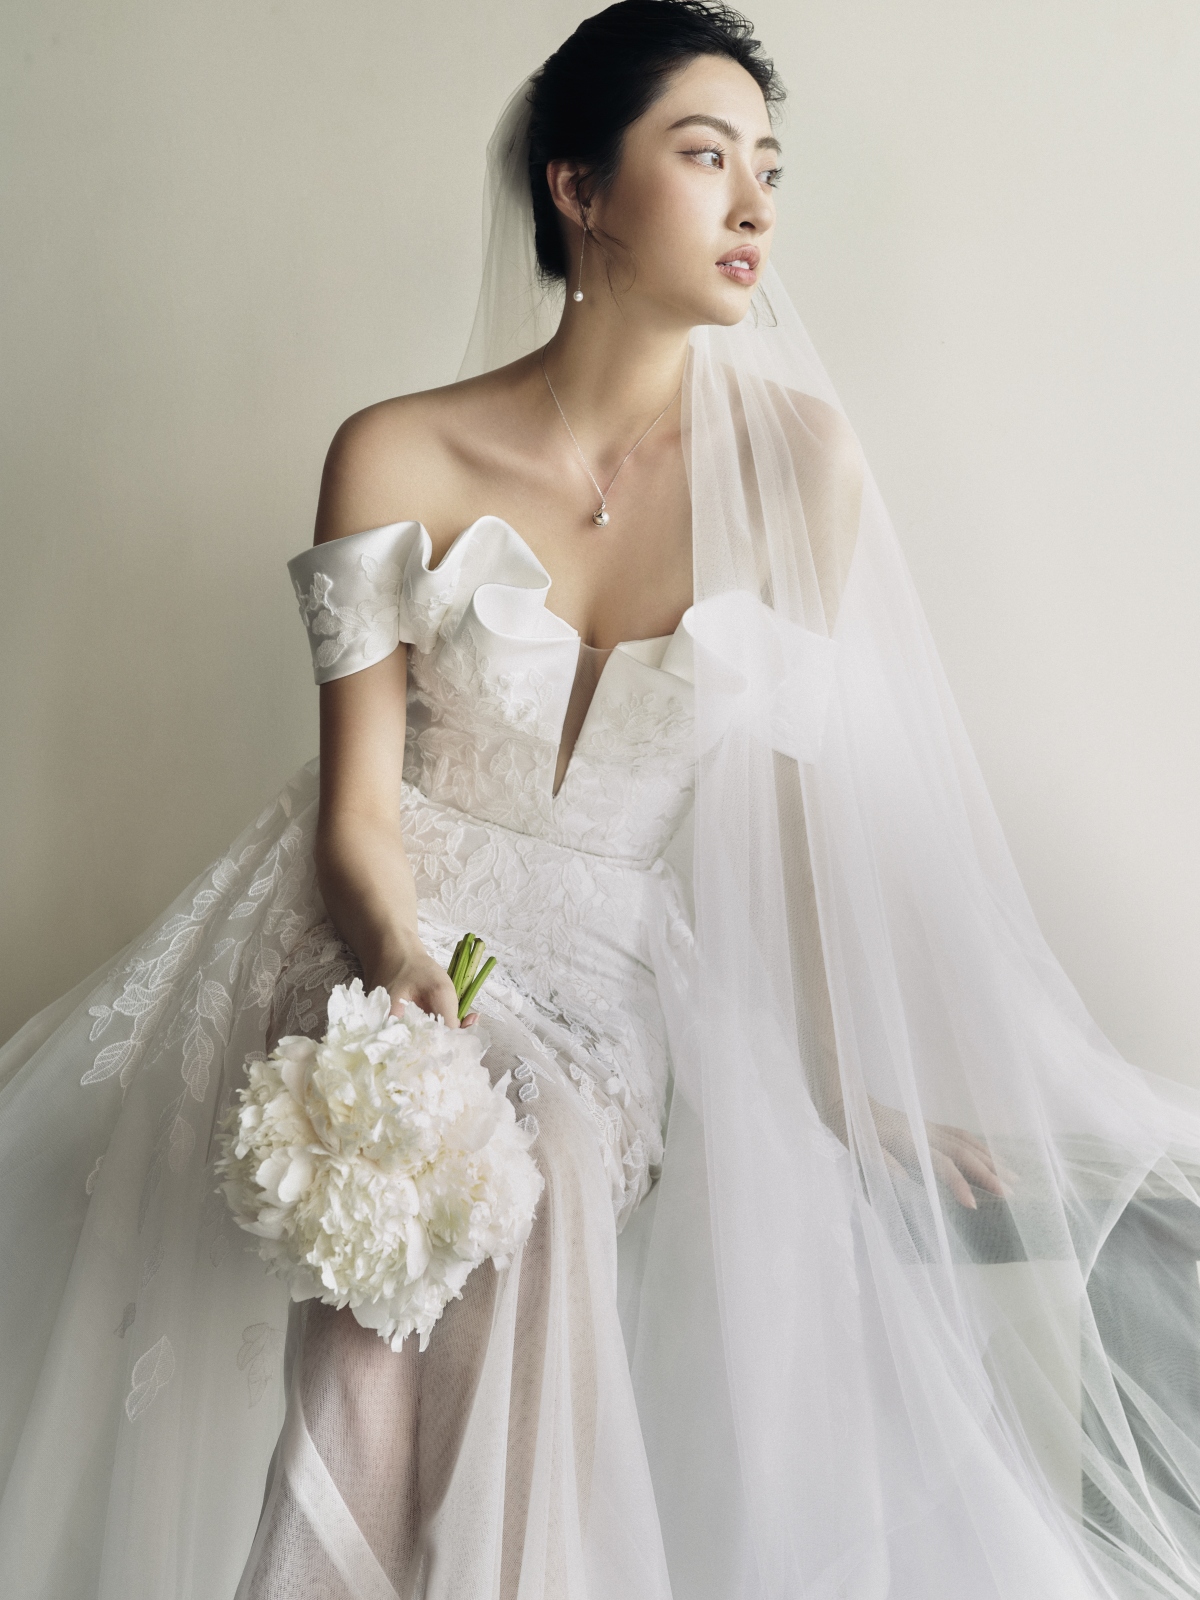 Hoa hậu Lương Thùy Linh làm cô dâu đẹp thanh khiết trong bộ ảnh mới - Ảnh 4.